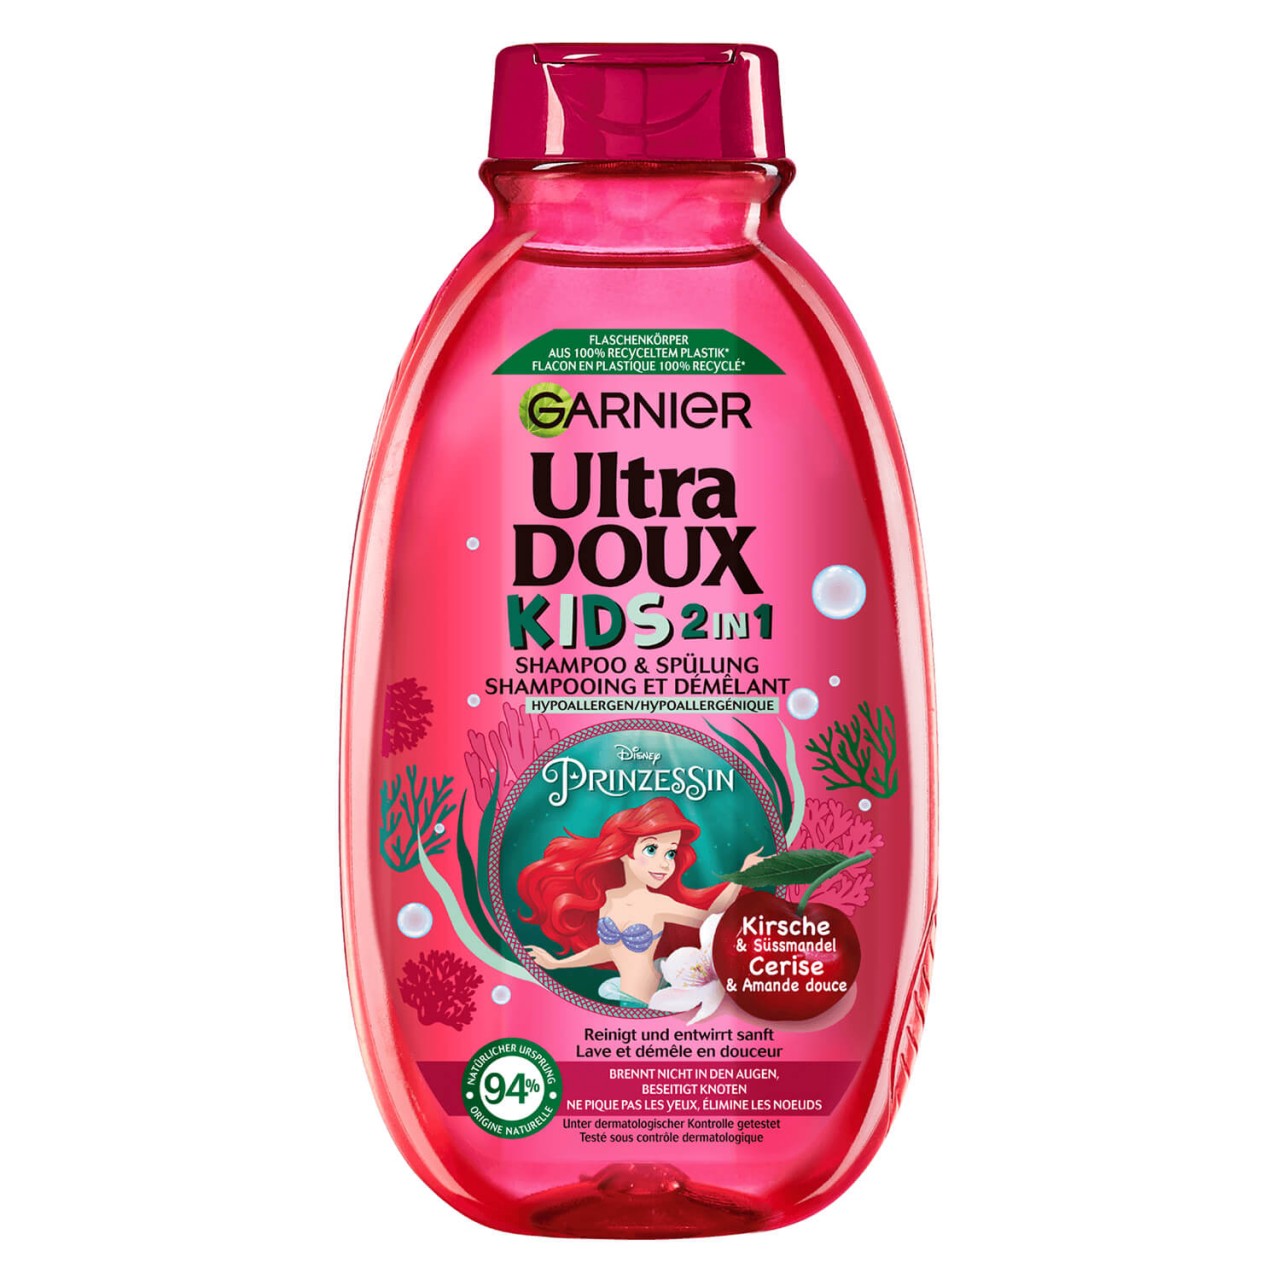 Ultra Doux Haircare - Kids 2in1 Shampoo & Spülung Kirsche & Süssmandel von GARNIER